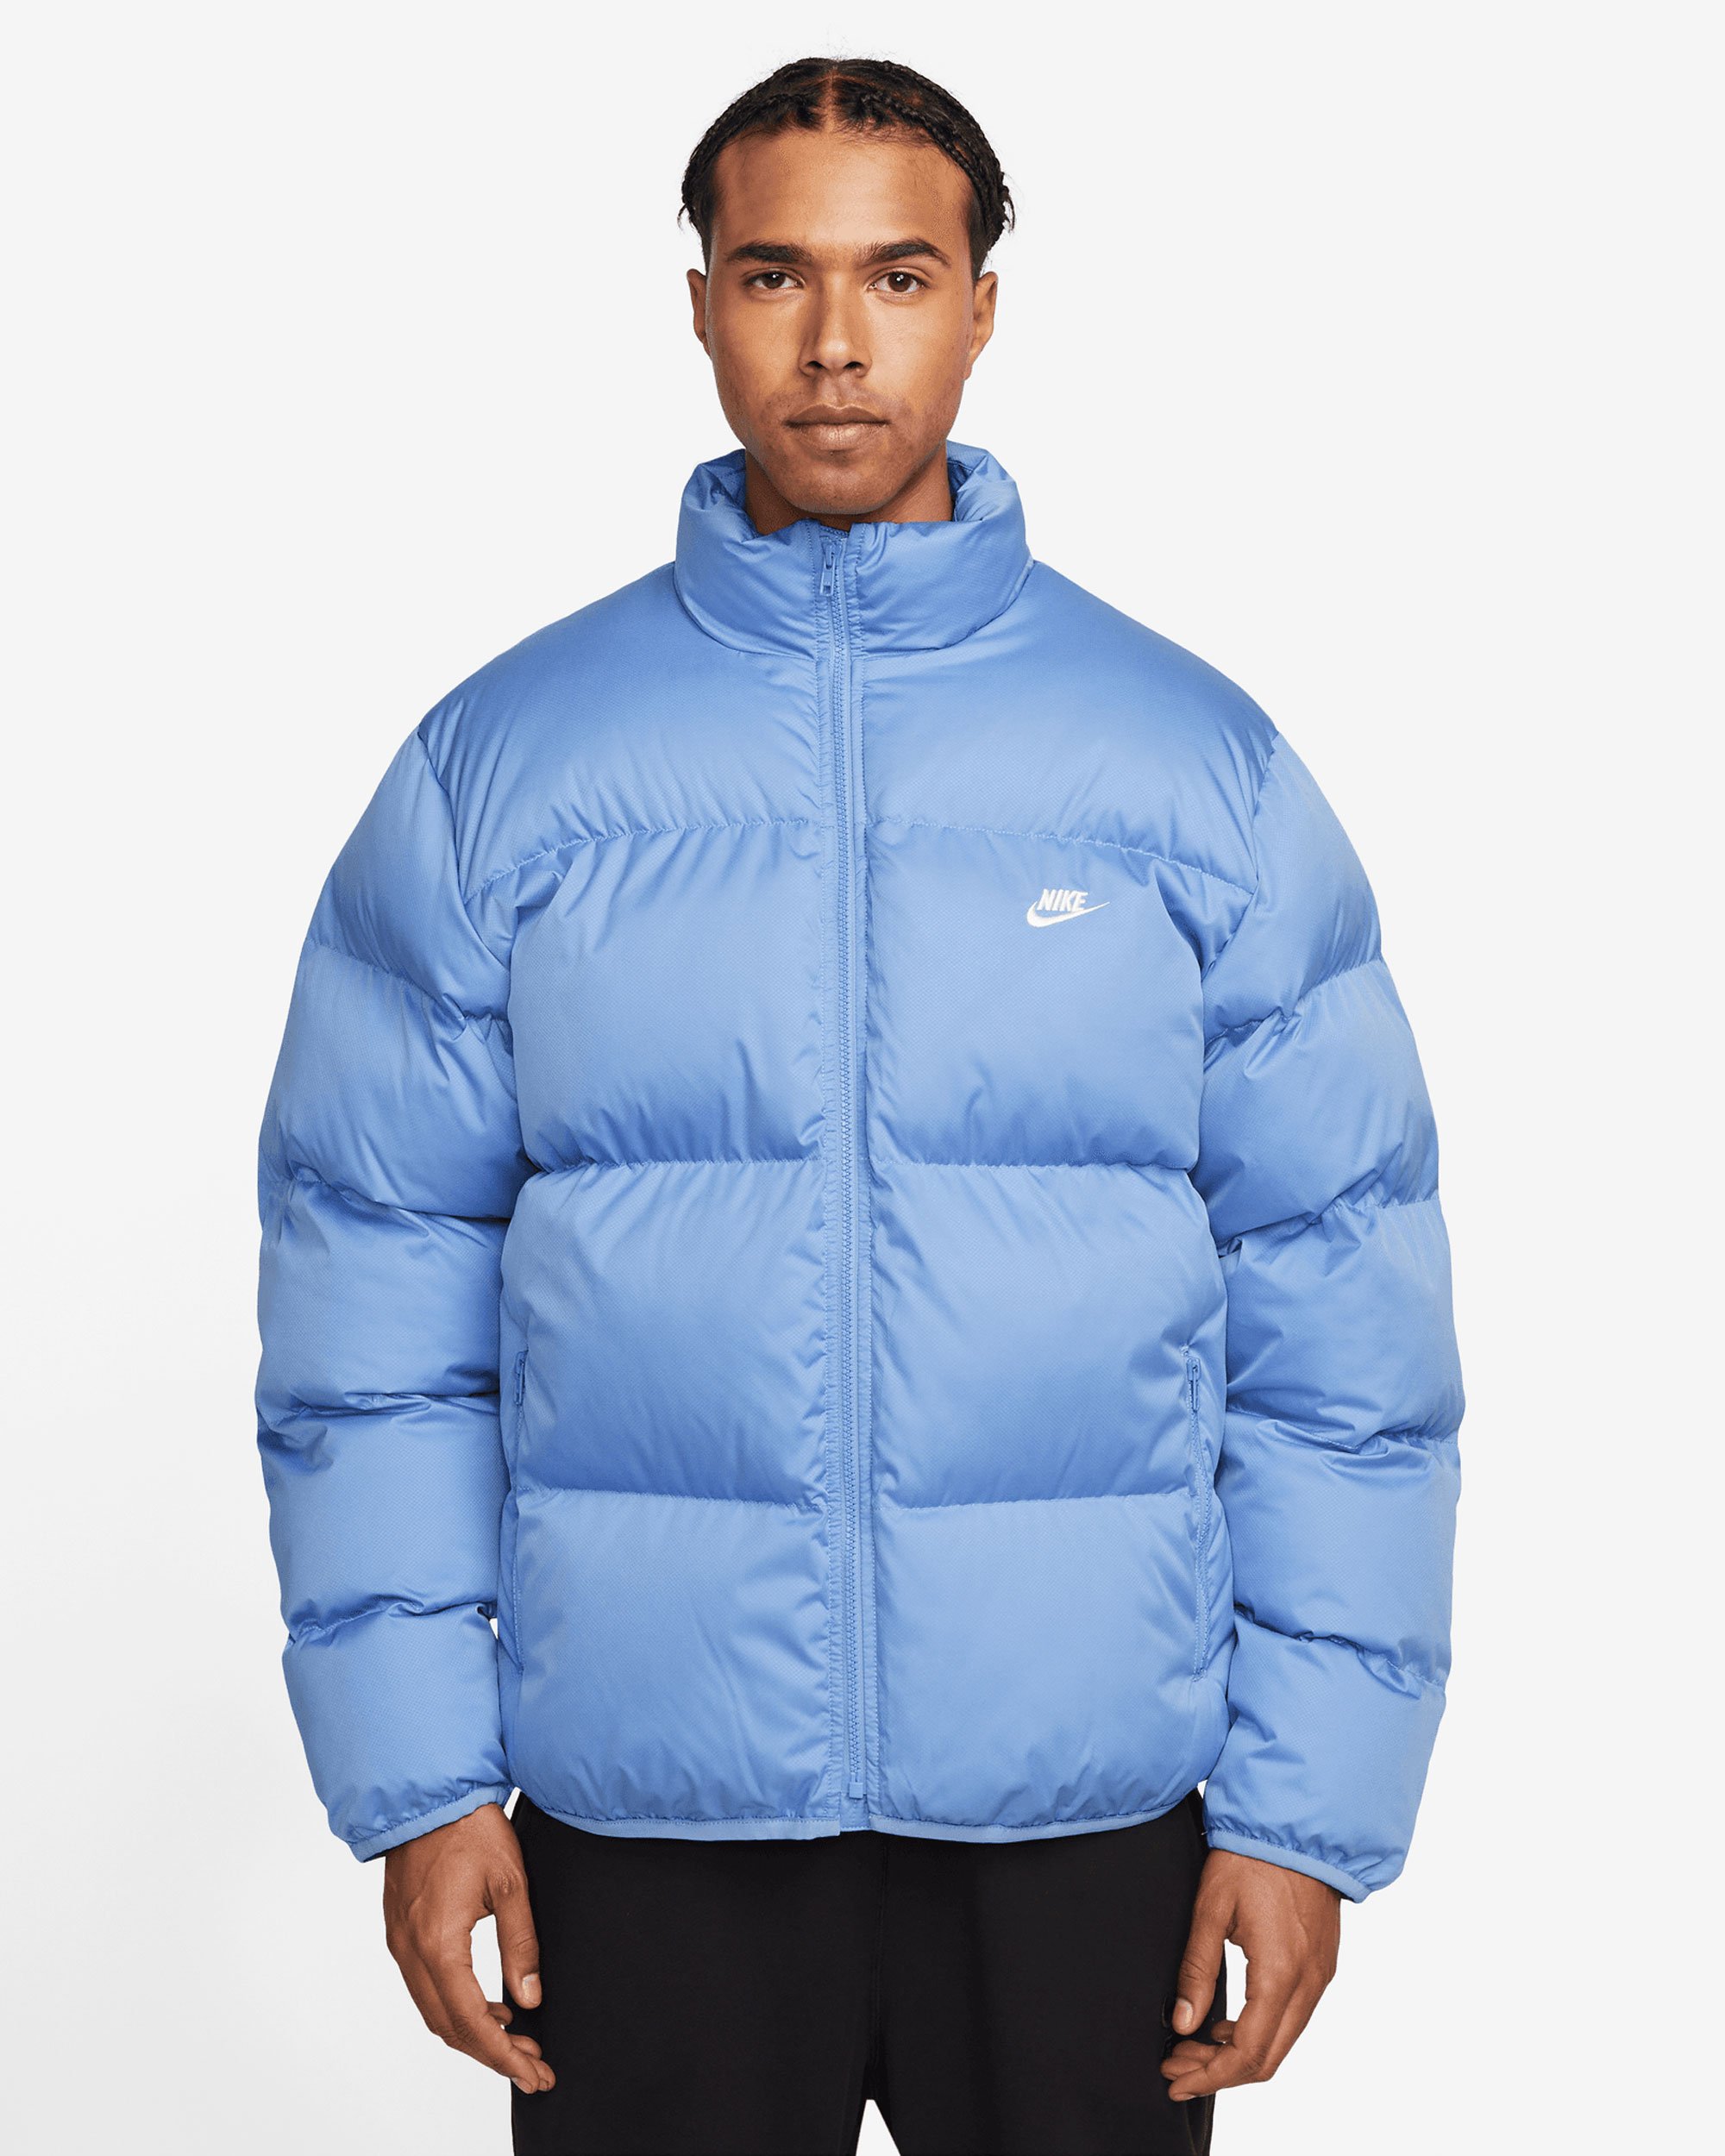 Nike Sportswear Storm-FIT Men's Puffer Jacket Blue FB7368-450| Buy ...